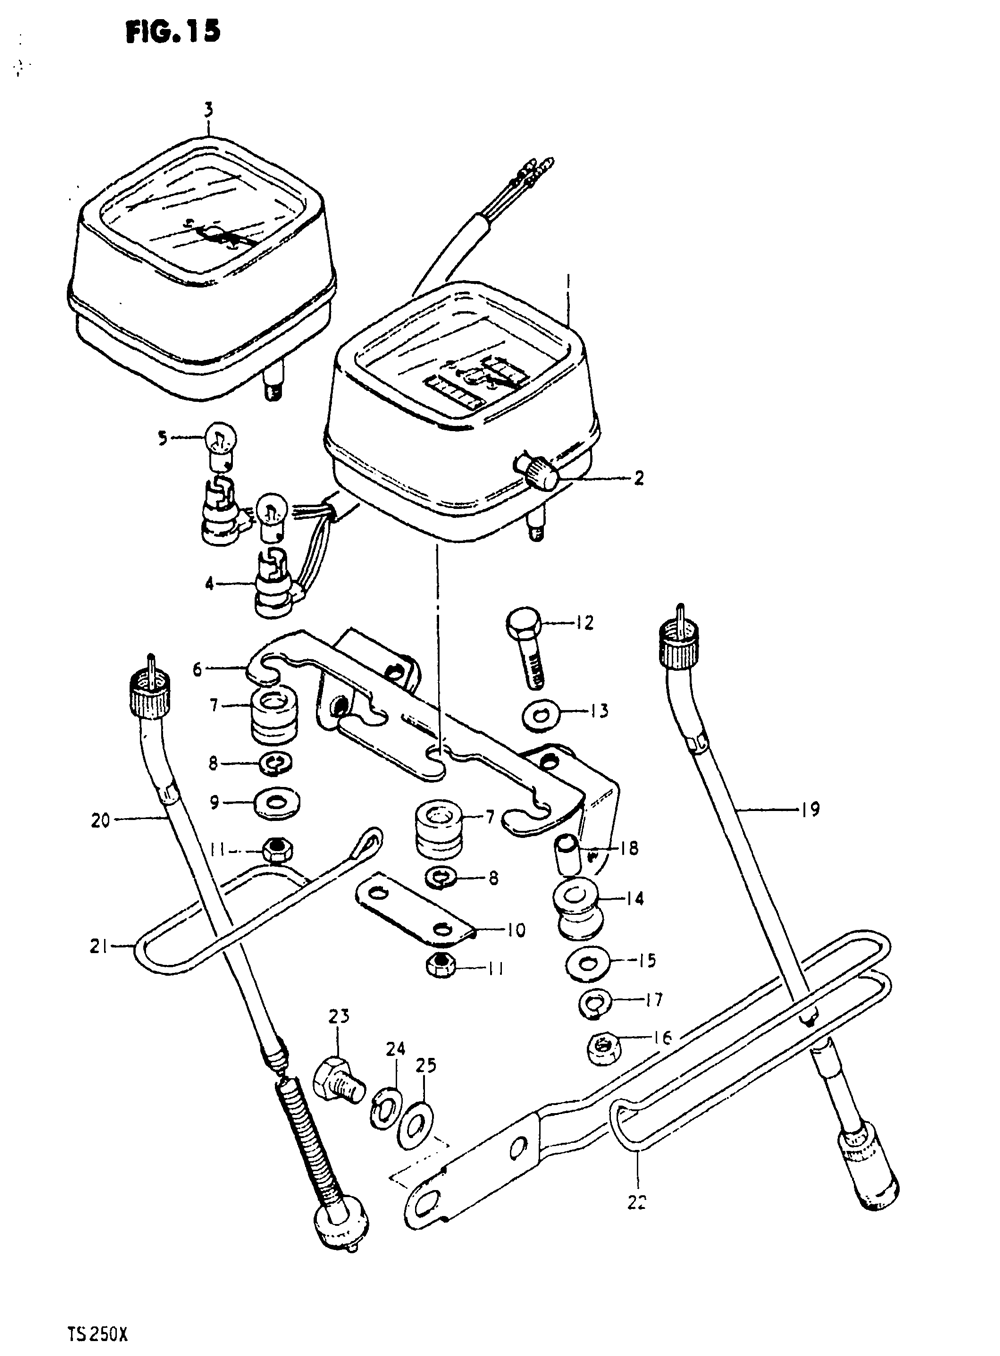 Speedometer - tachometer